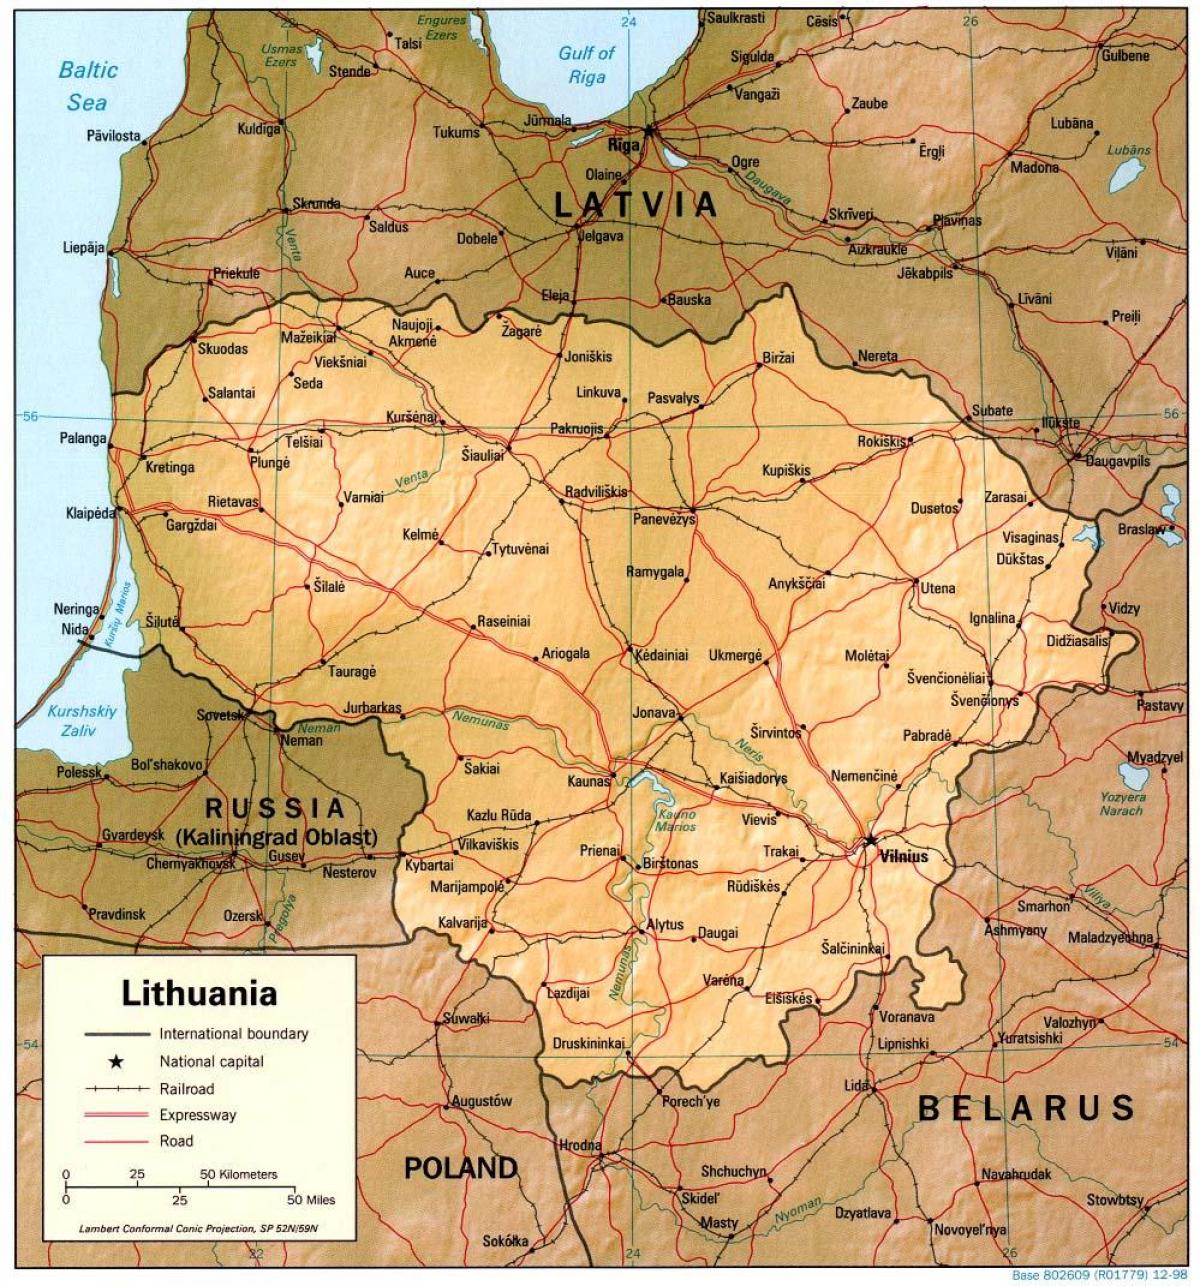 Mappa di Lituania